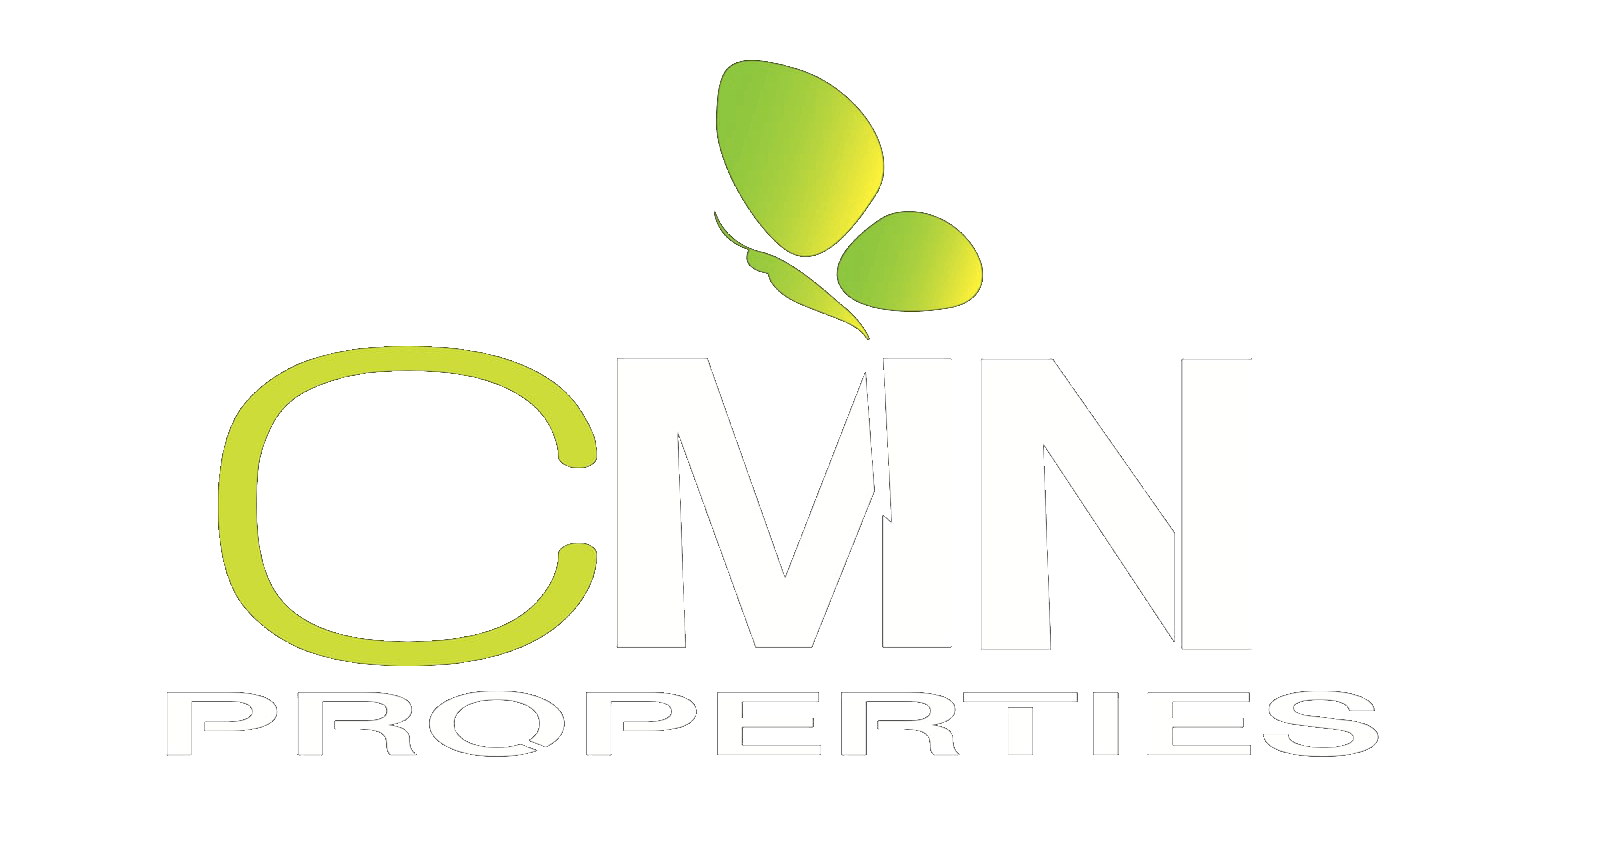 CMN Properties